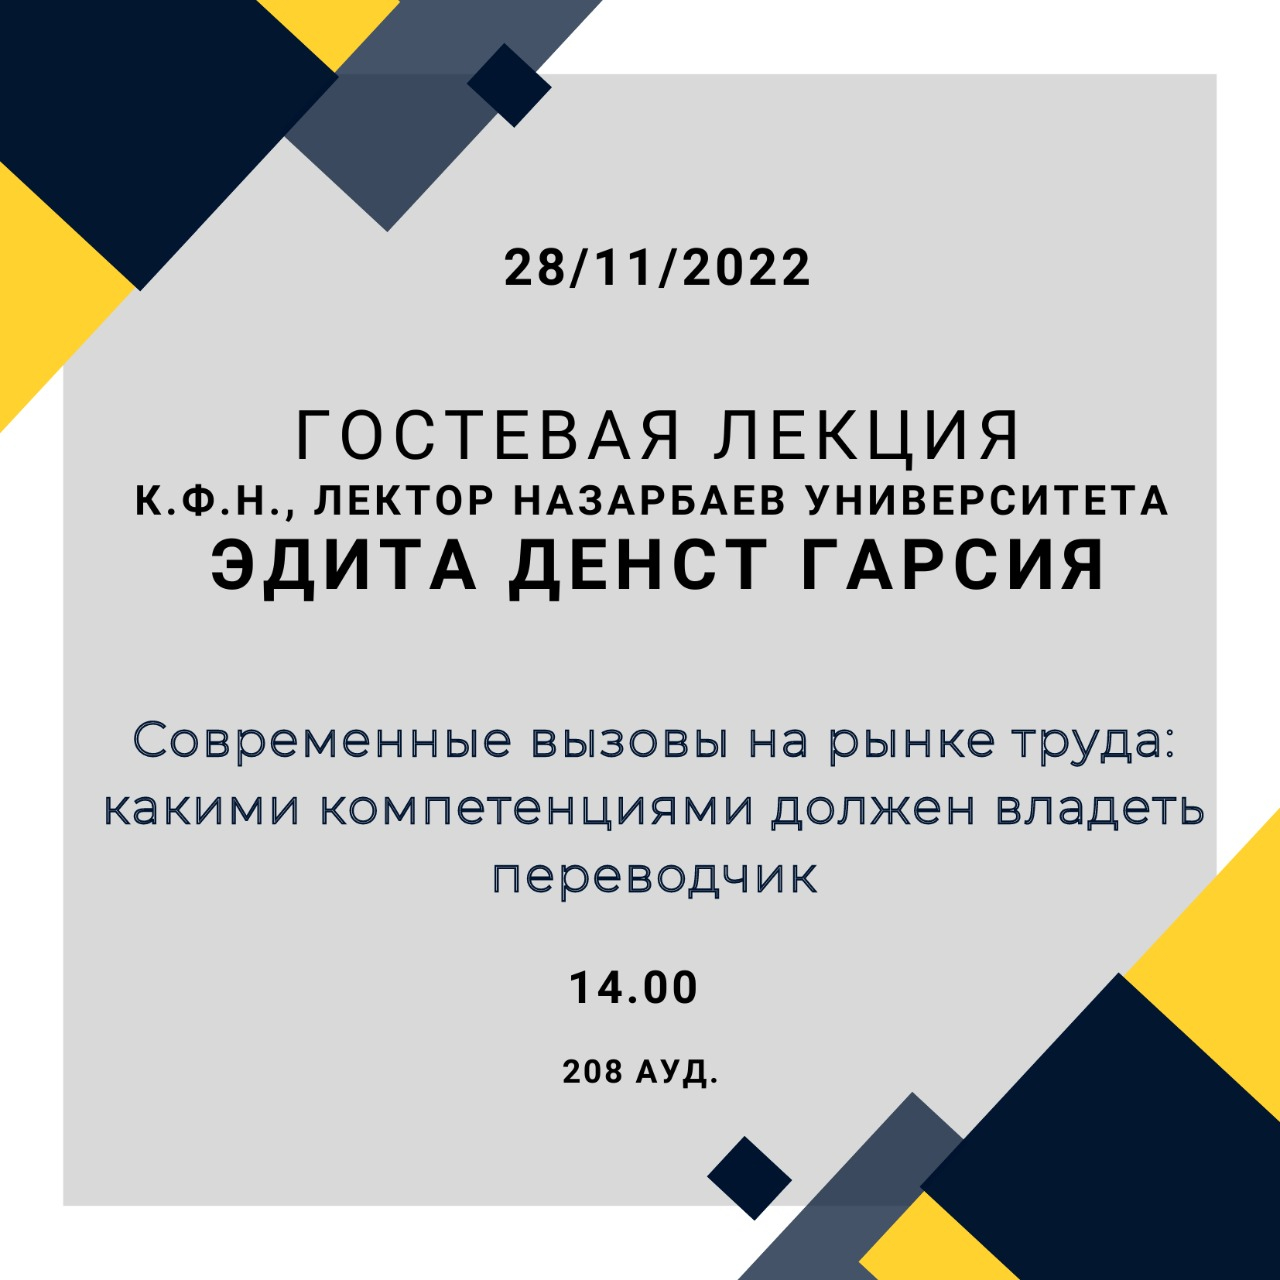 28.11.22 в 14.00 состоится гостевая лекция к.ф.н., лектора Назарбаев университета Эдиты Денст Гарсии